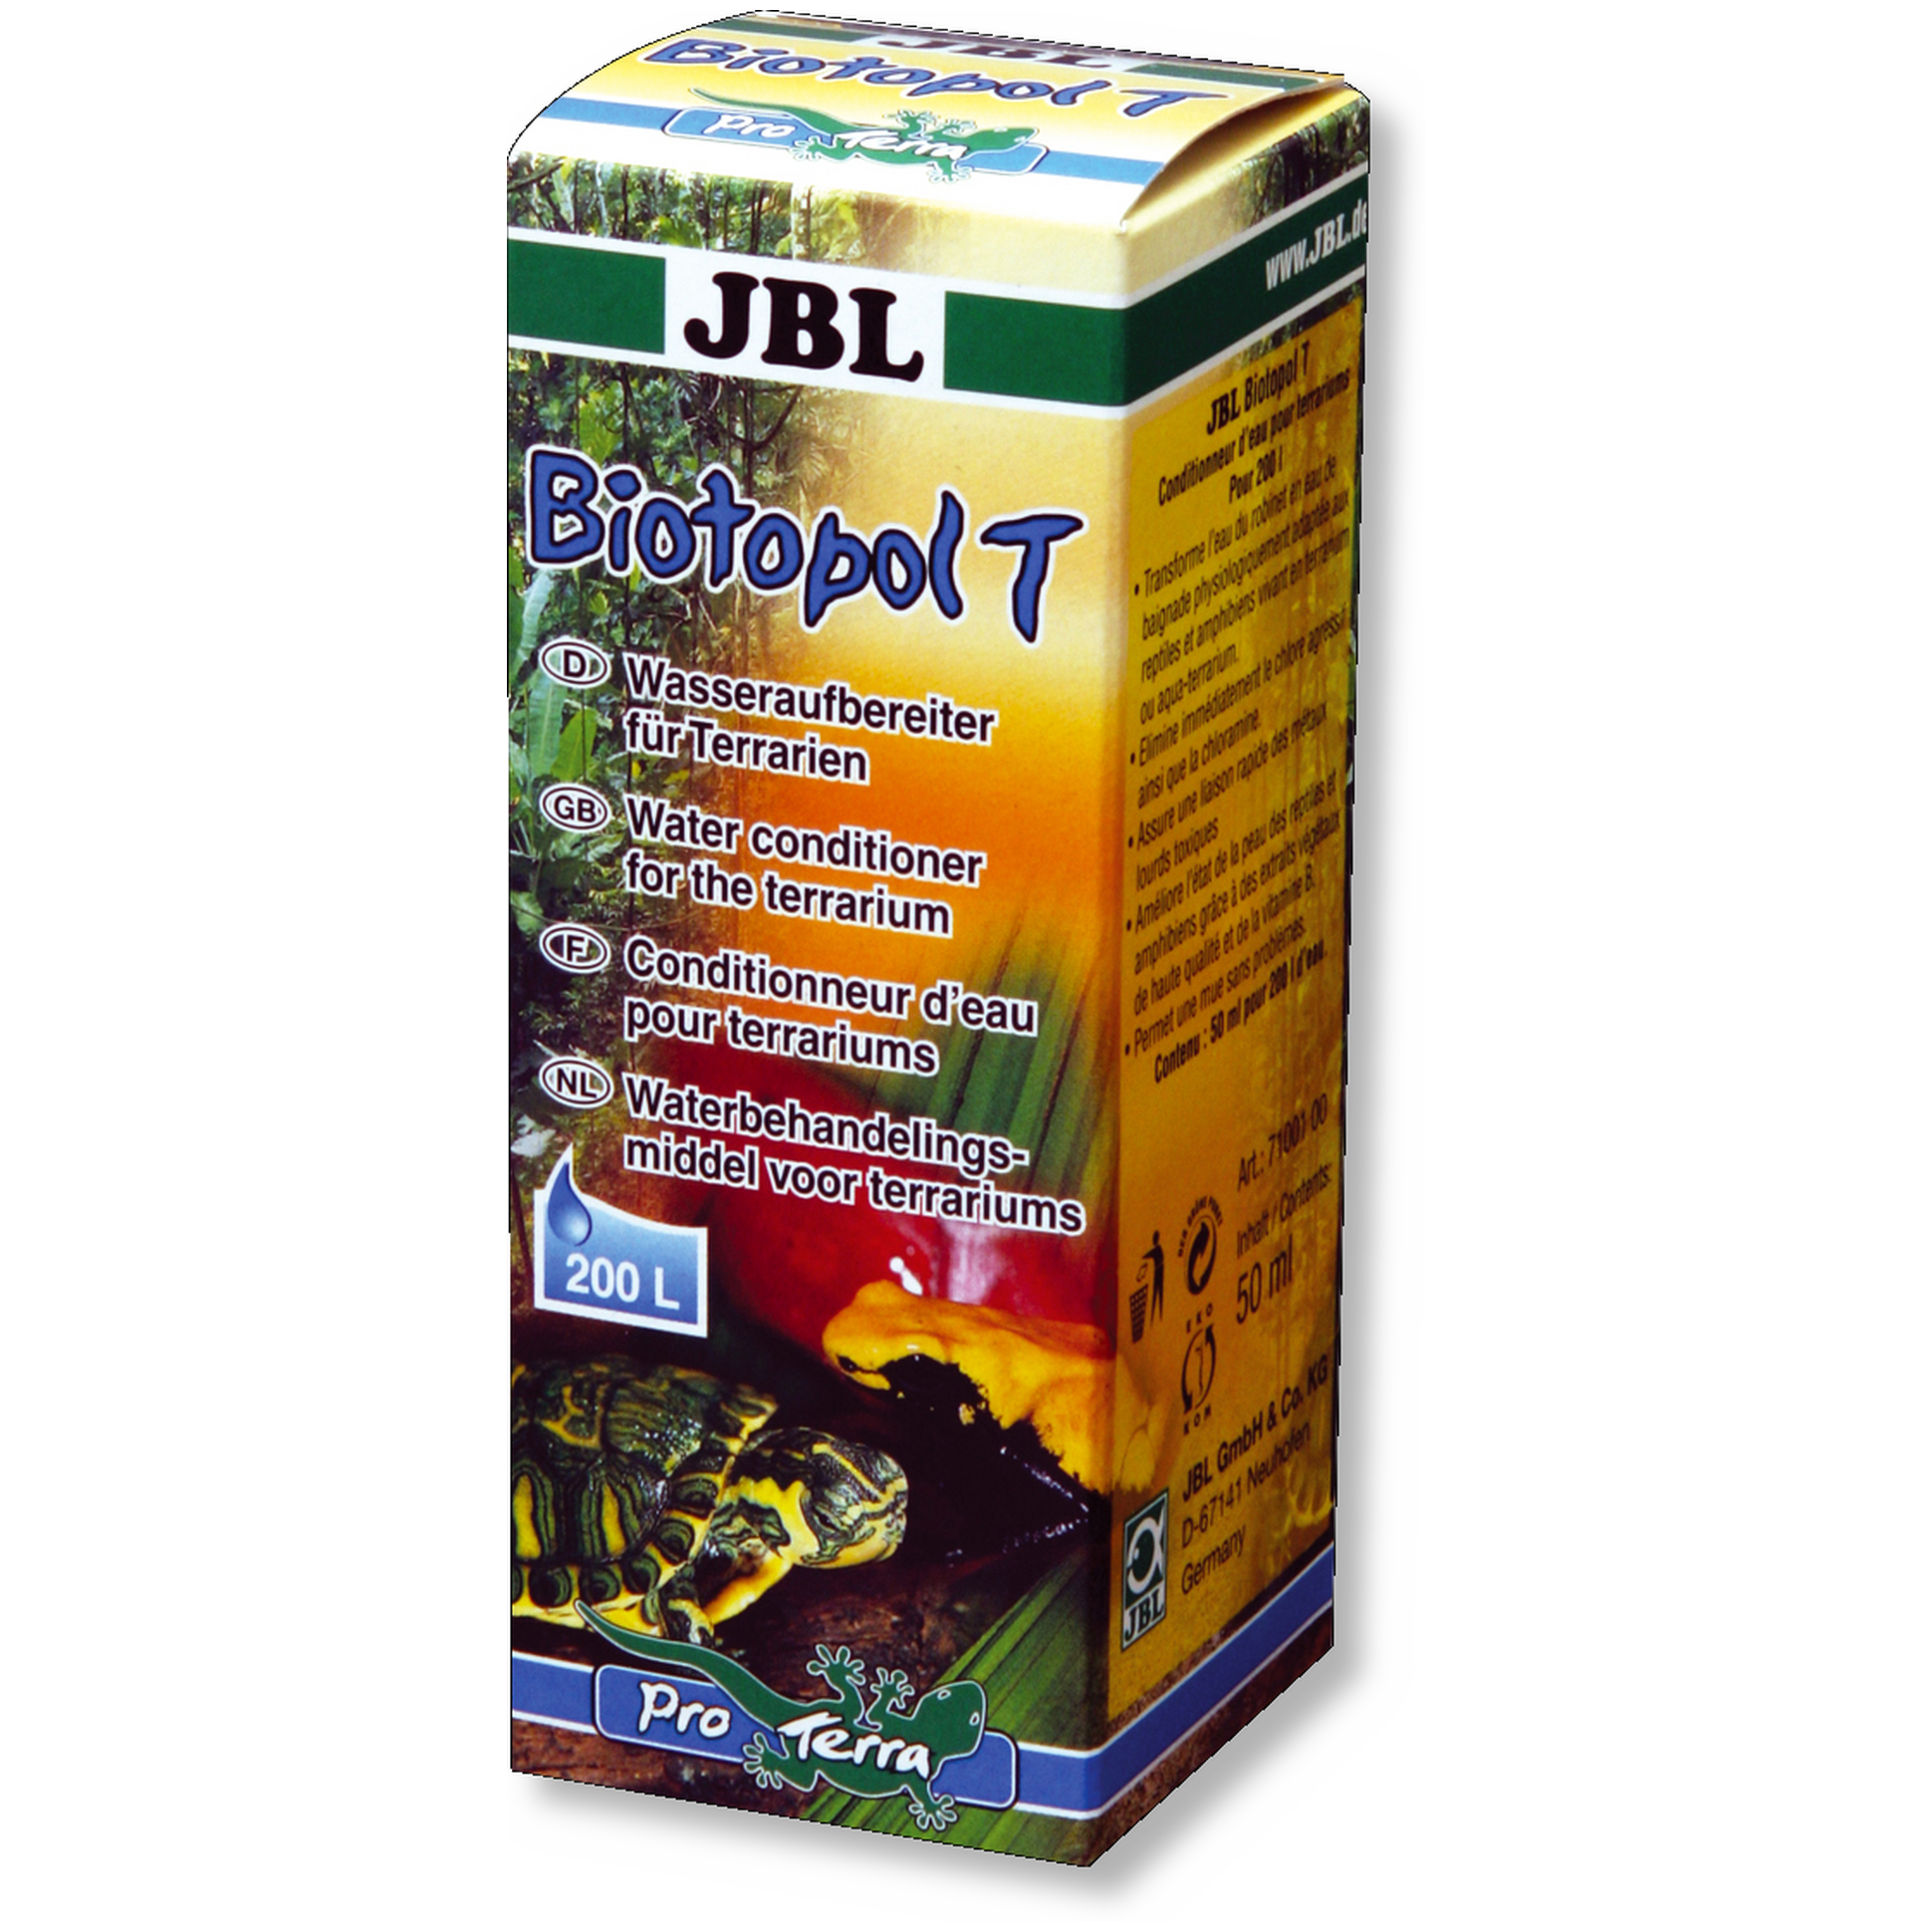 JBL Biotopol T Wasseraufbereiter für Terrarien